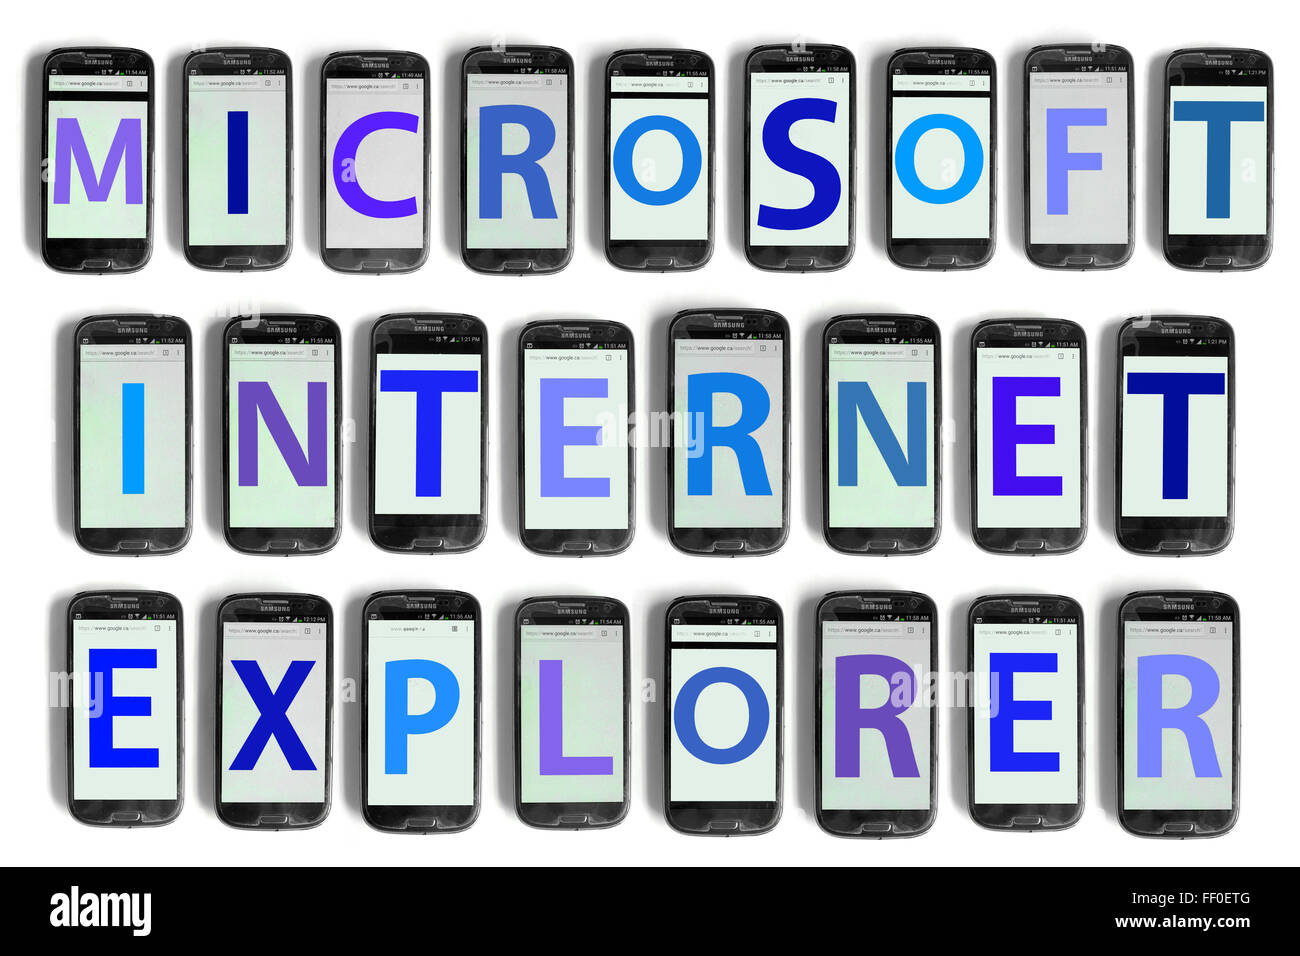 Microsoft Internet Explorer auf die Bildschirme von Smartphones vor weißem Hintergrund fotografiert geschrieben. Stockfoto